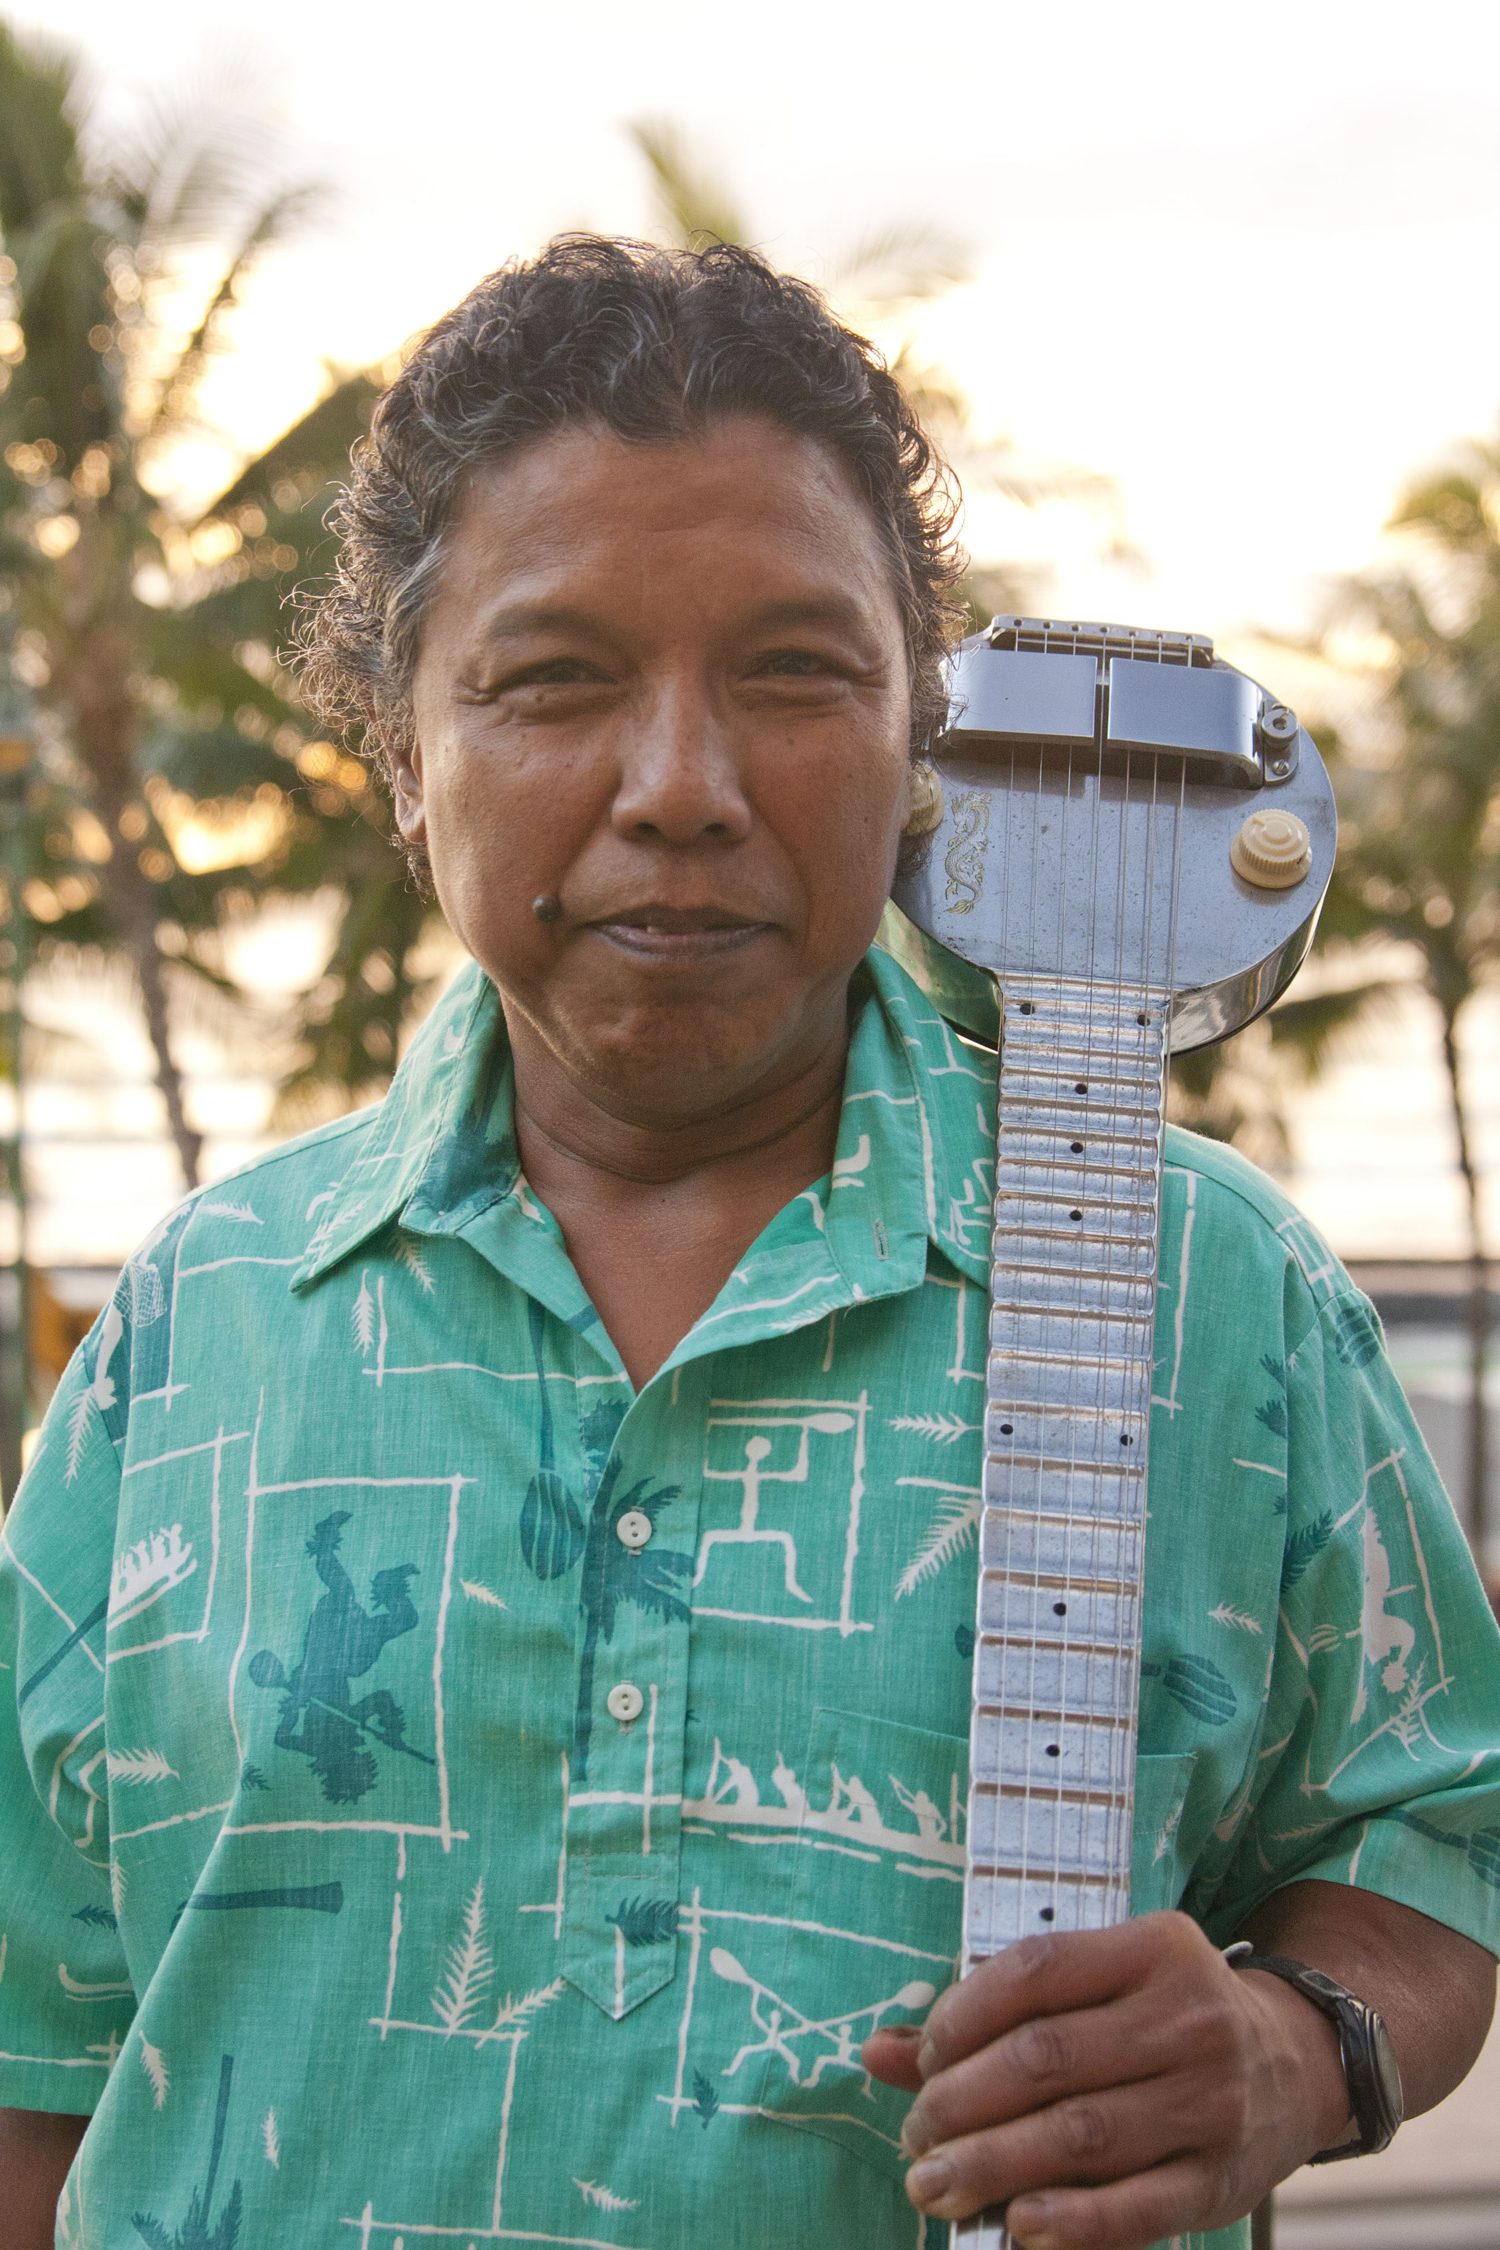 Top Guitar Amp Brands: Guitar Institute Of Hawaii